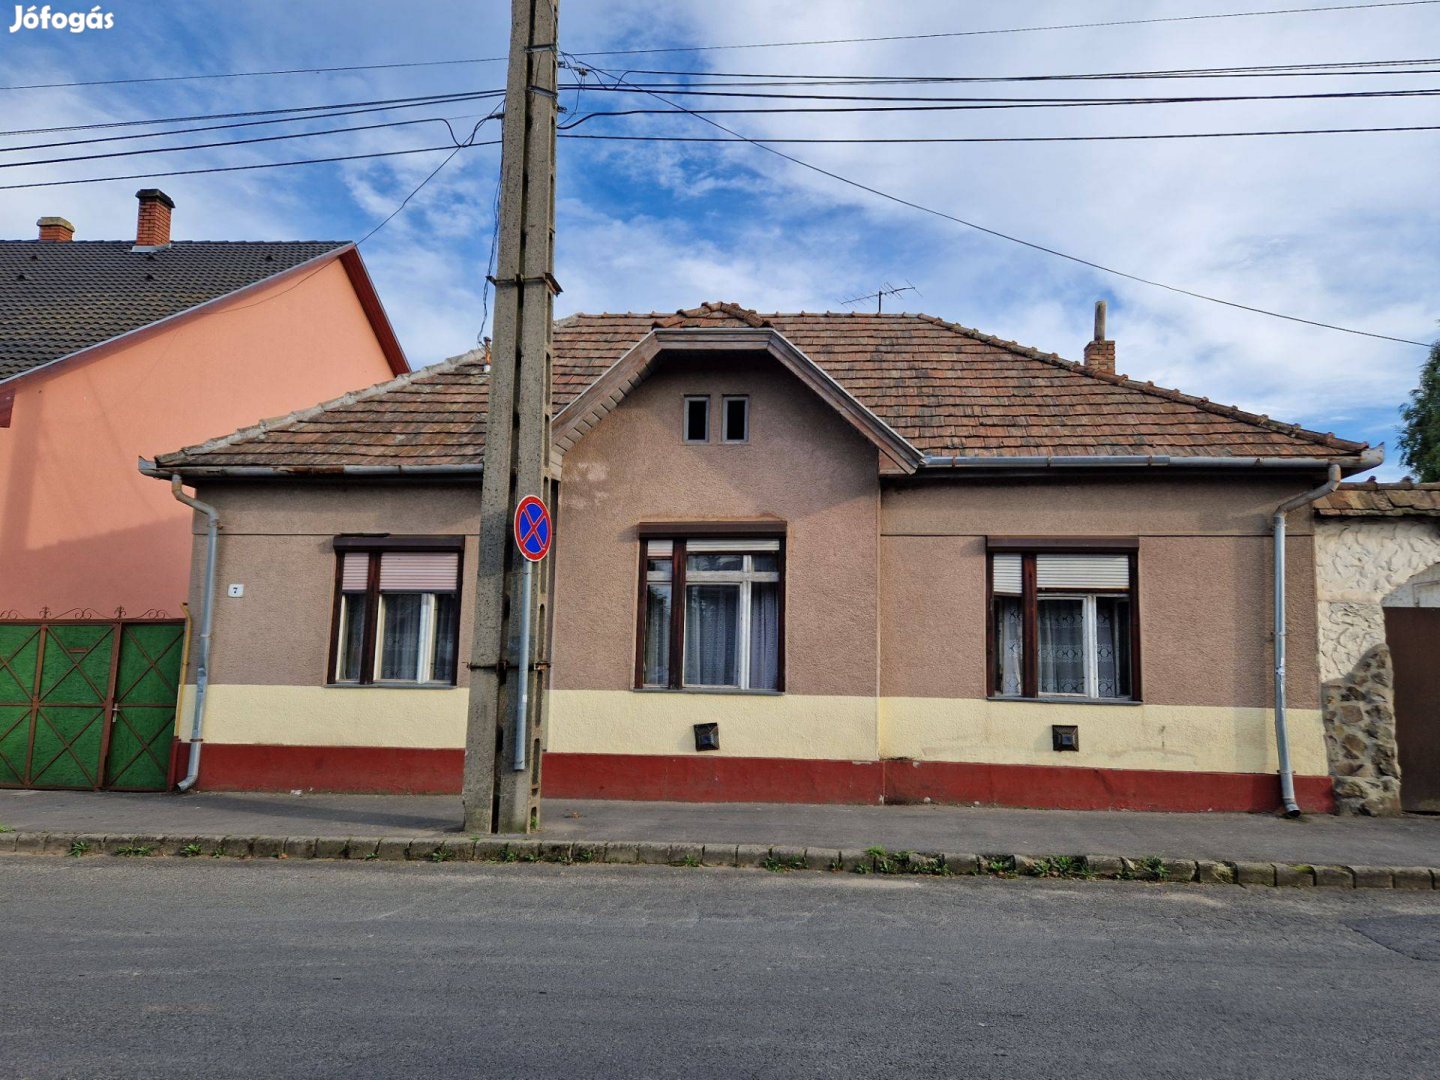 Ingatlan a történelmi kisvárosban, Szécsényben